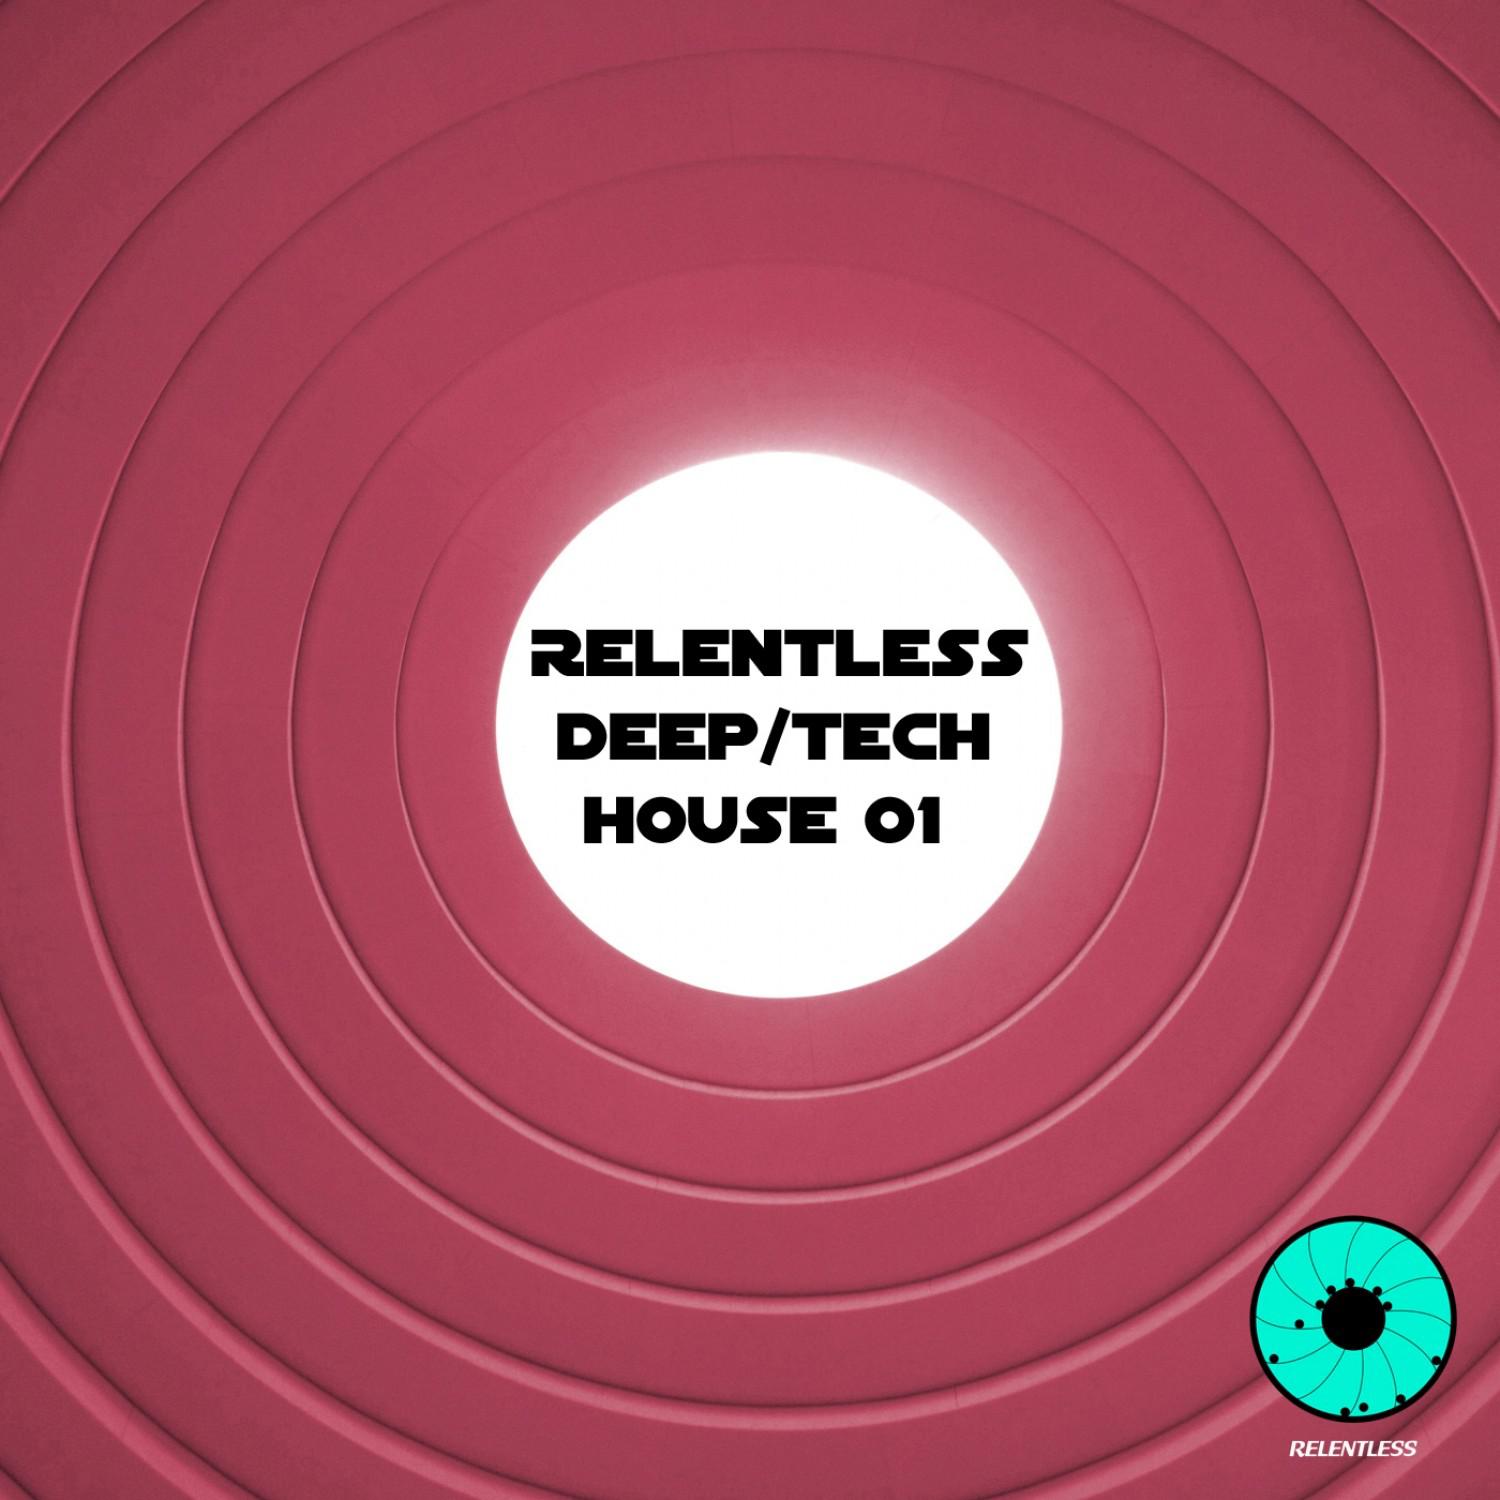 Relentless Deep / Tech House 01